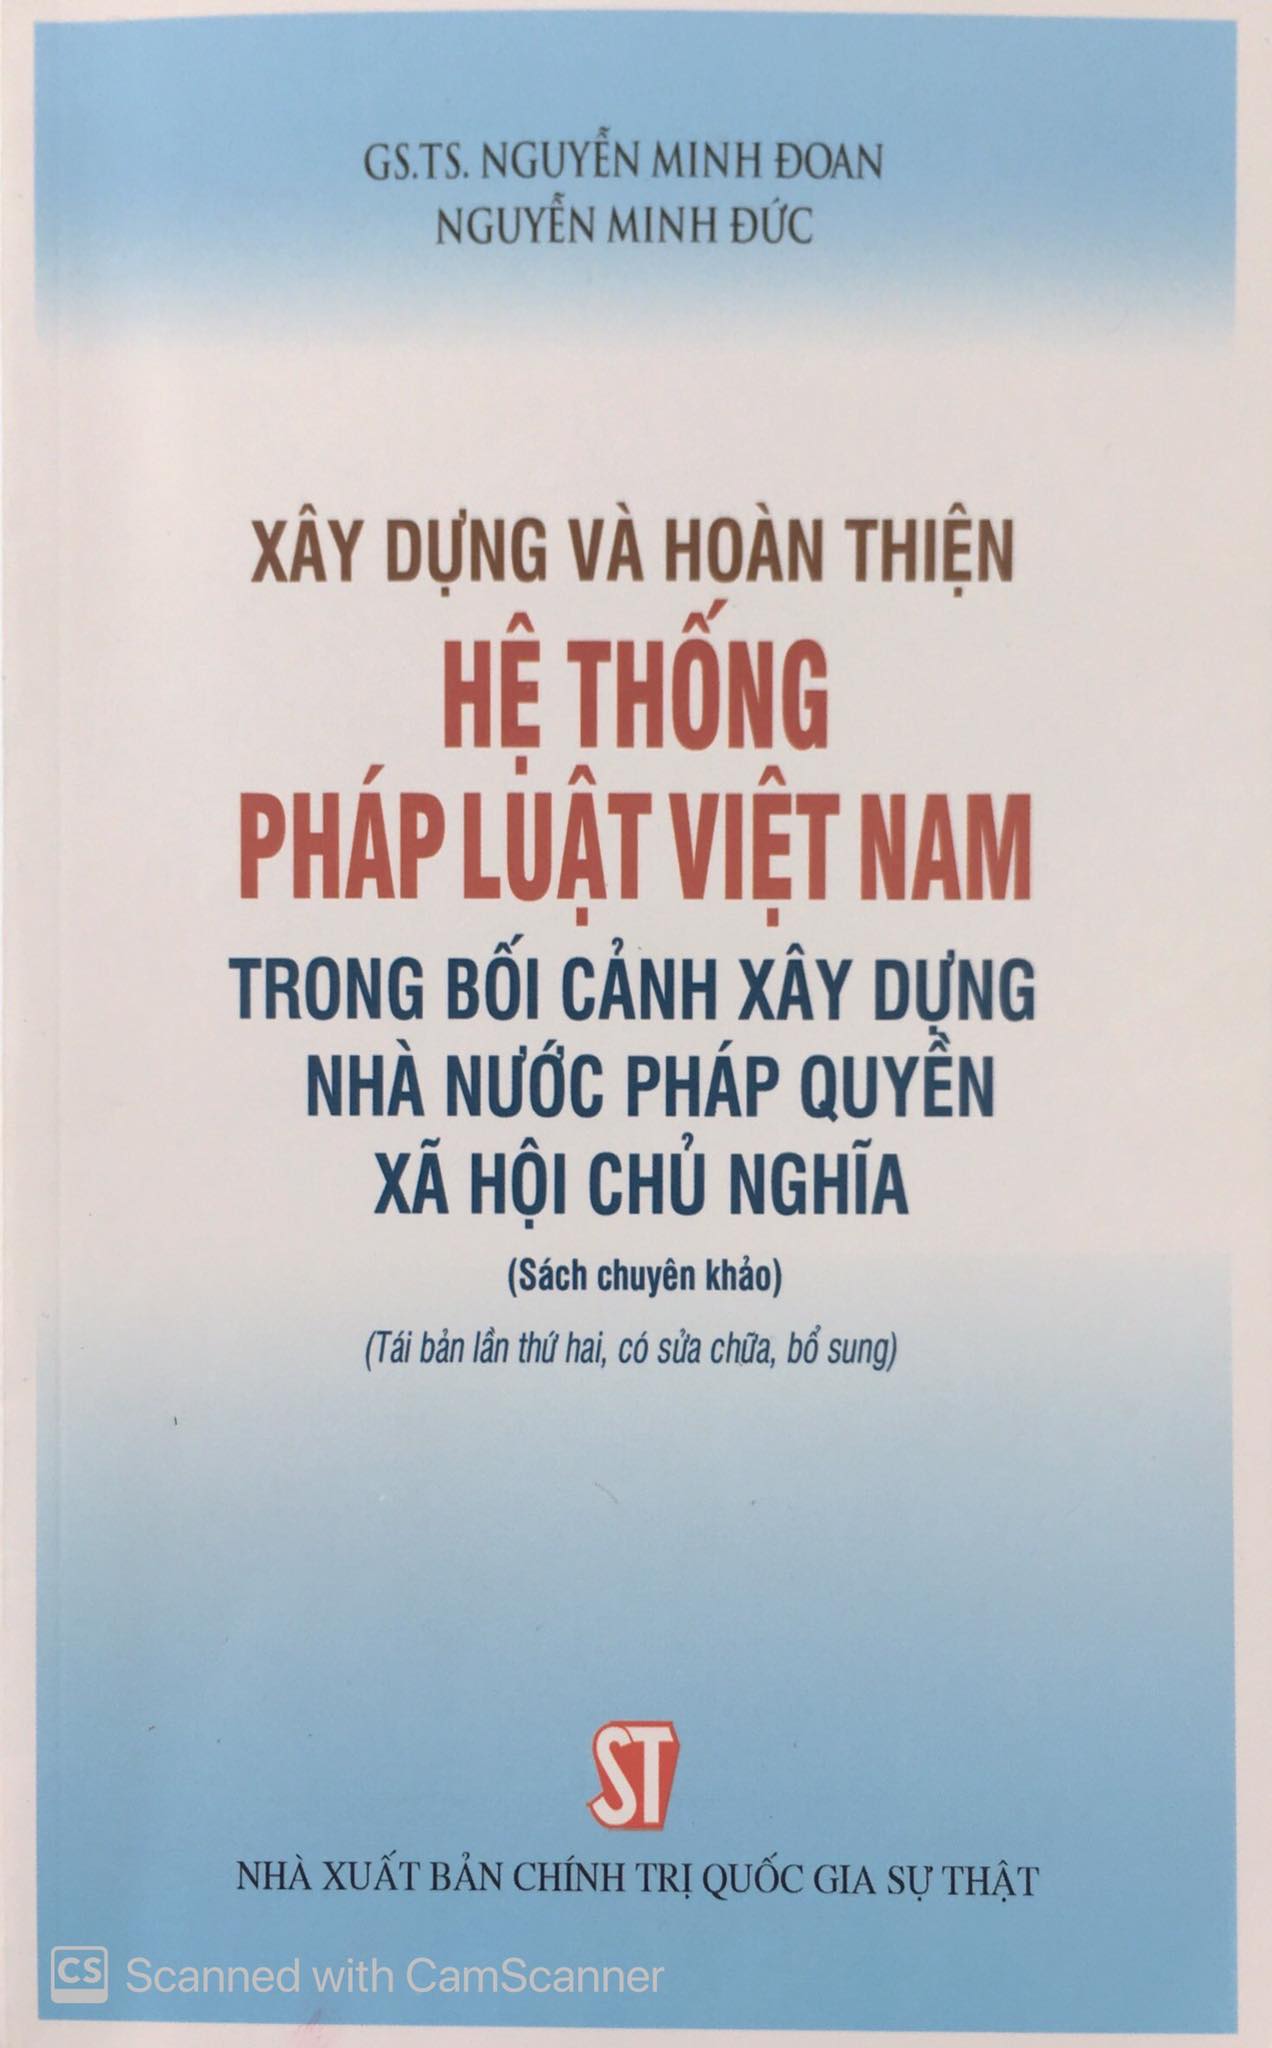  Xây dựng và hoàn thiện hệ thống pháp luật Việt Nam trong bối cảnh xây dựng Nhà nước pháp quyền xã hội chủ nghĩa (Sách chuyên khảo) (Tái bản lần thứ hai, có sửa chữa, bổ sung)